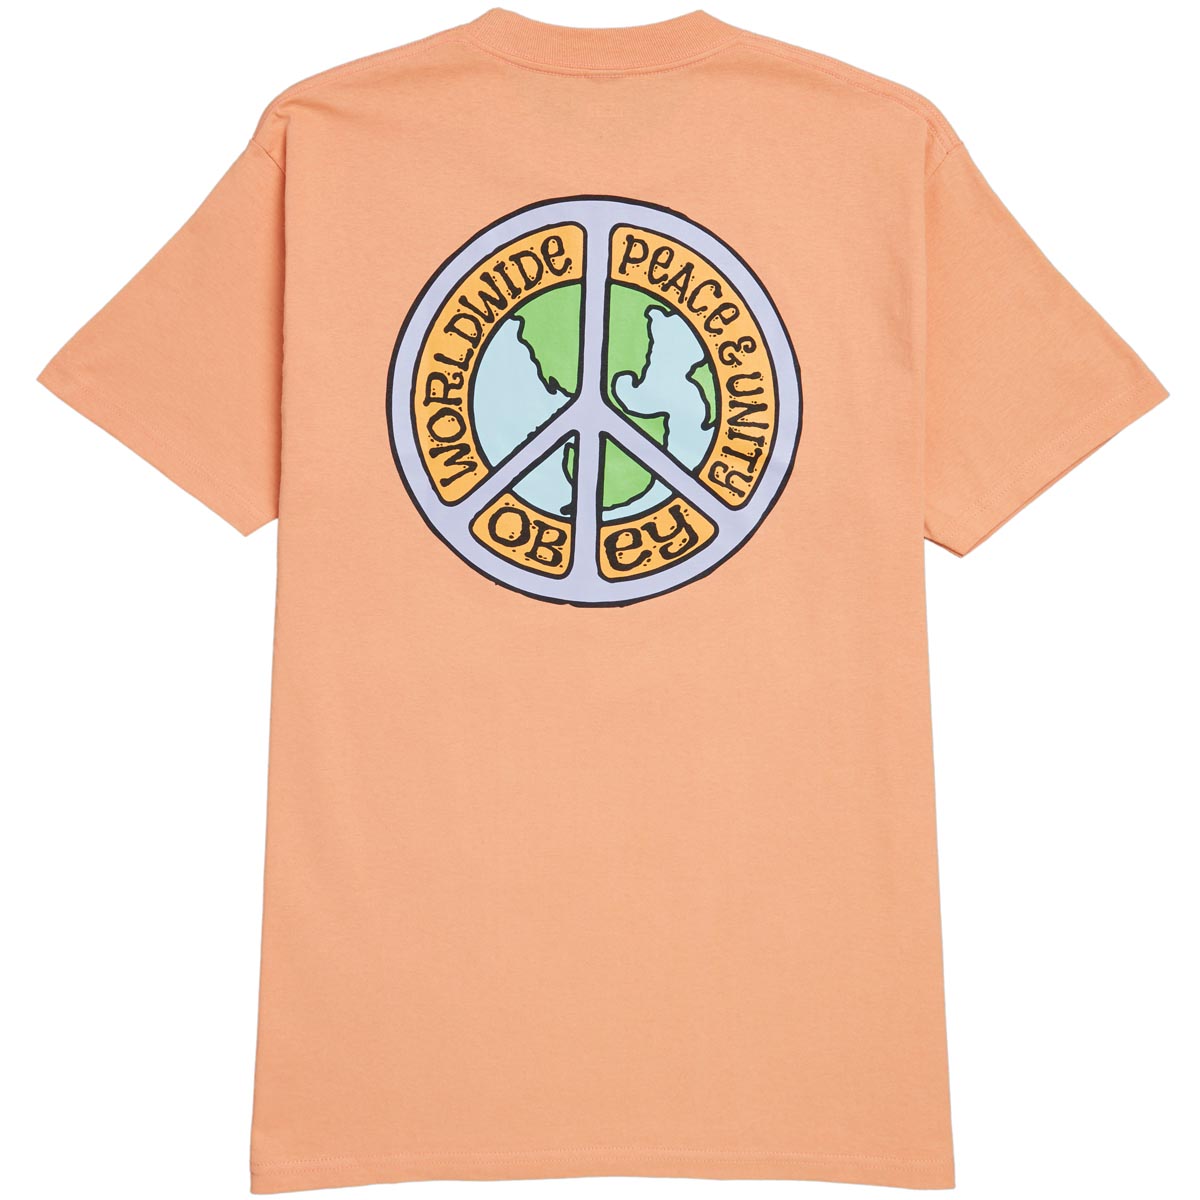 Obey Peace & Unit T-Shirt - Citrus image 1